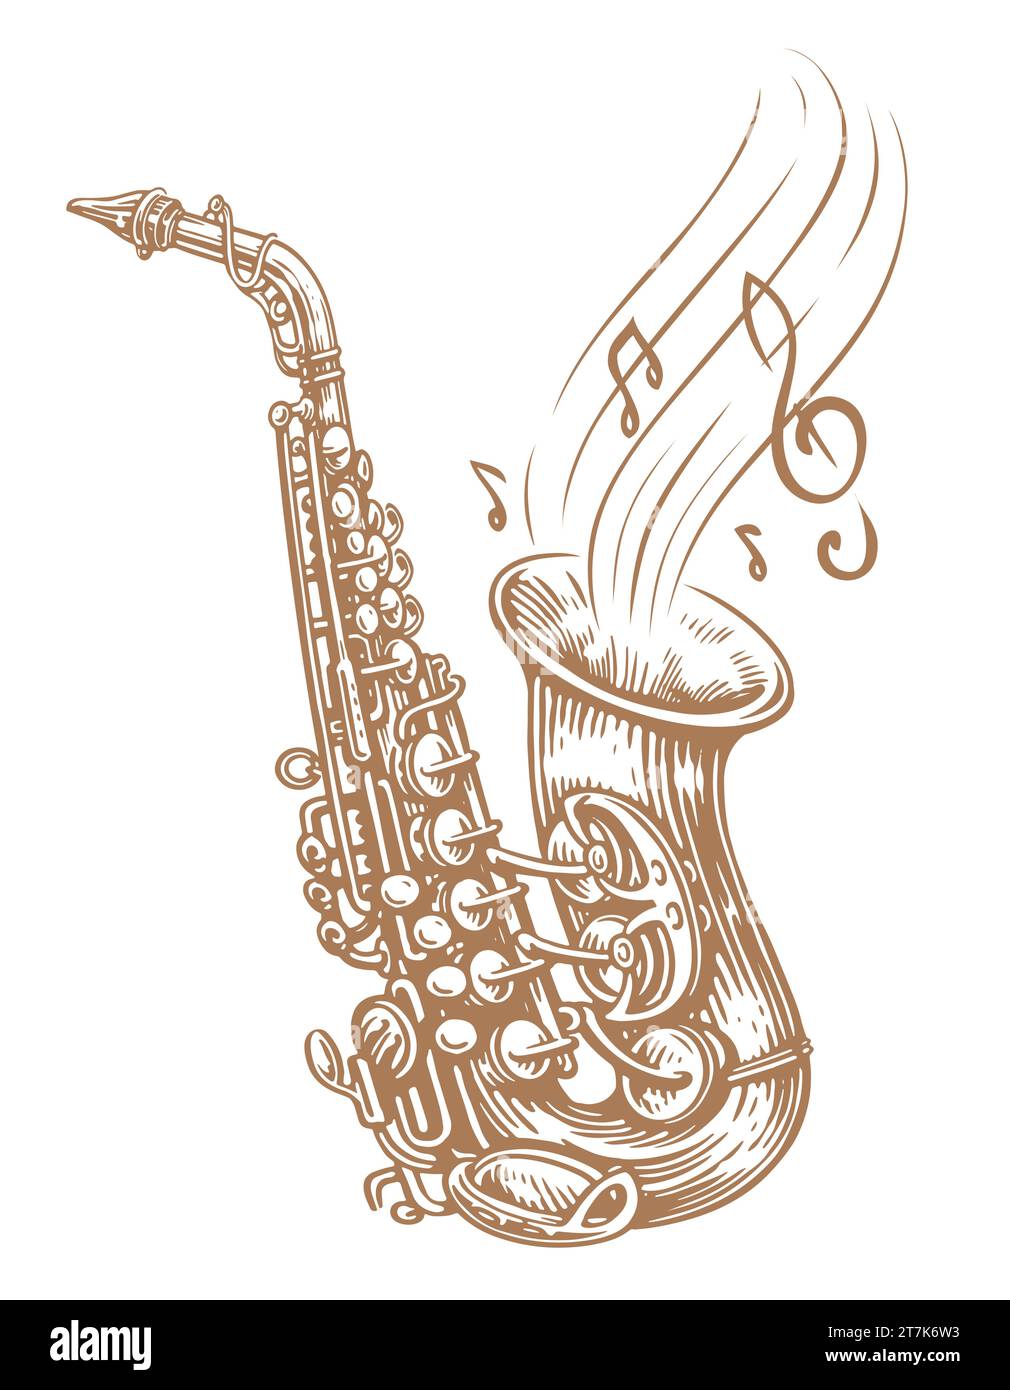 Illustrazione del vettore del sassofono. Disegno a mano di uno strumento musicale a fiato e note musicali Illustrazione Vettoriale